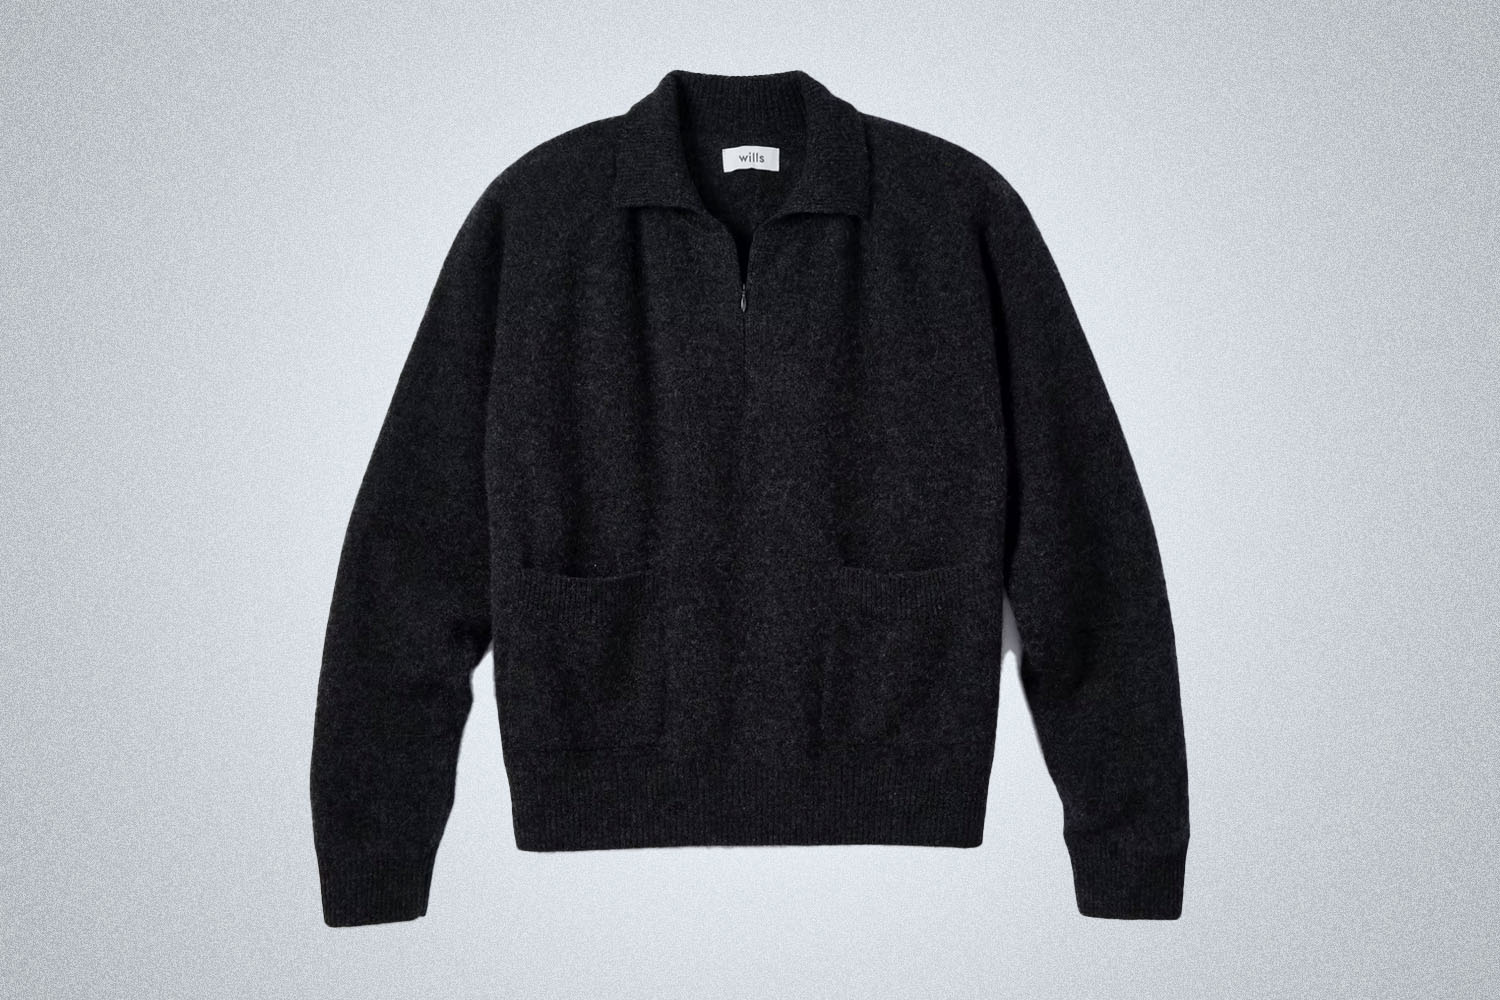 a black cashmere pullover